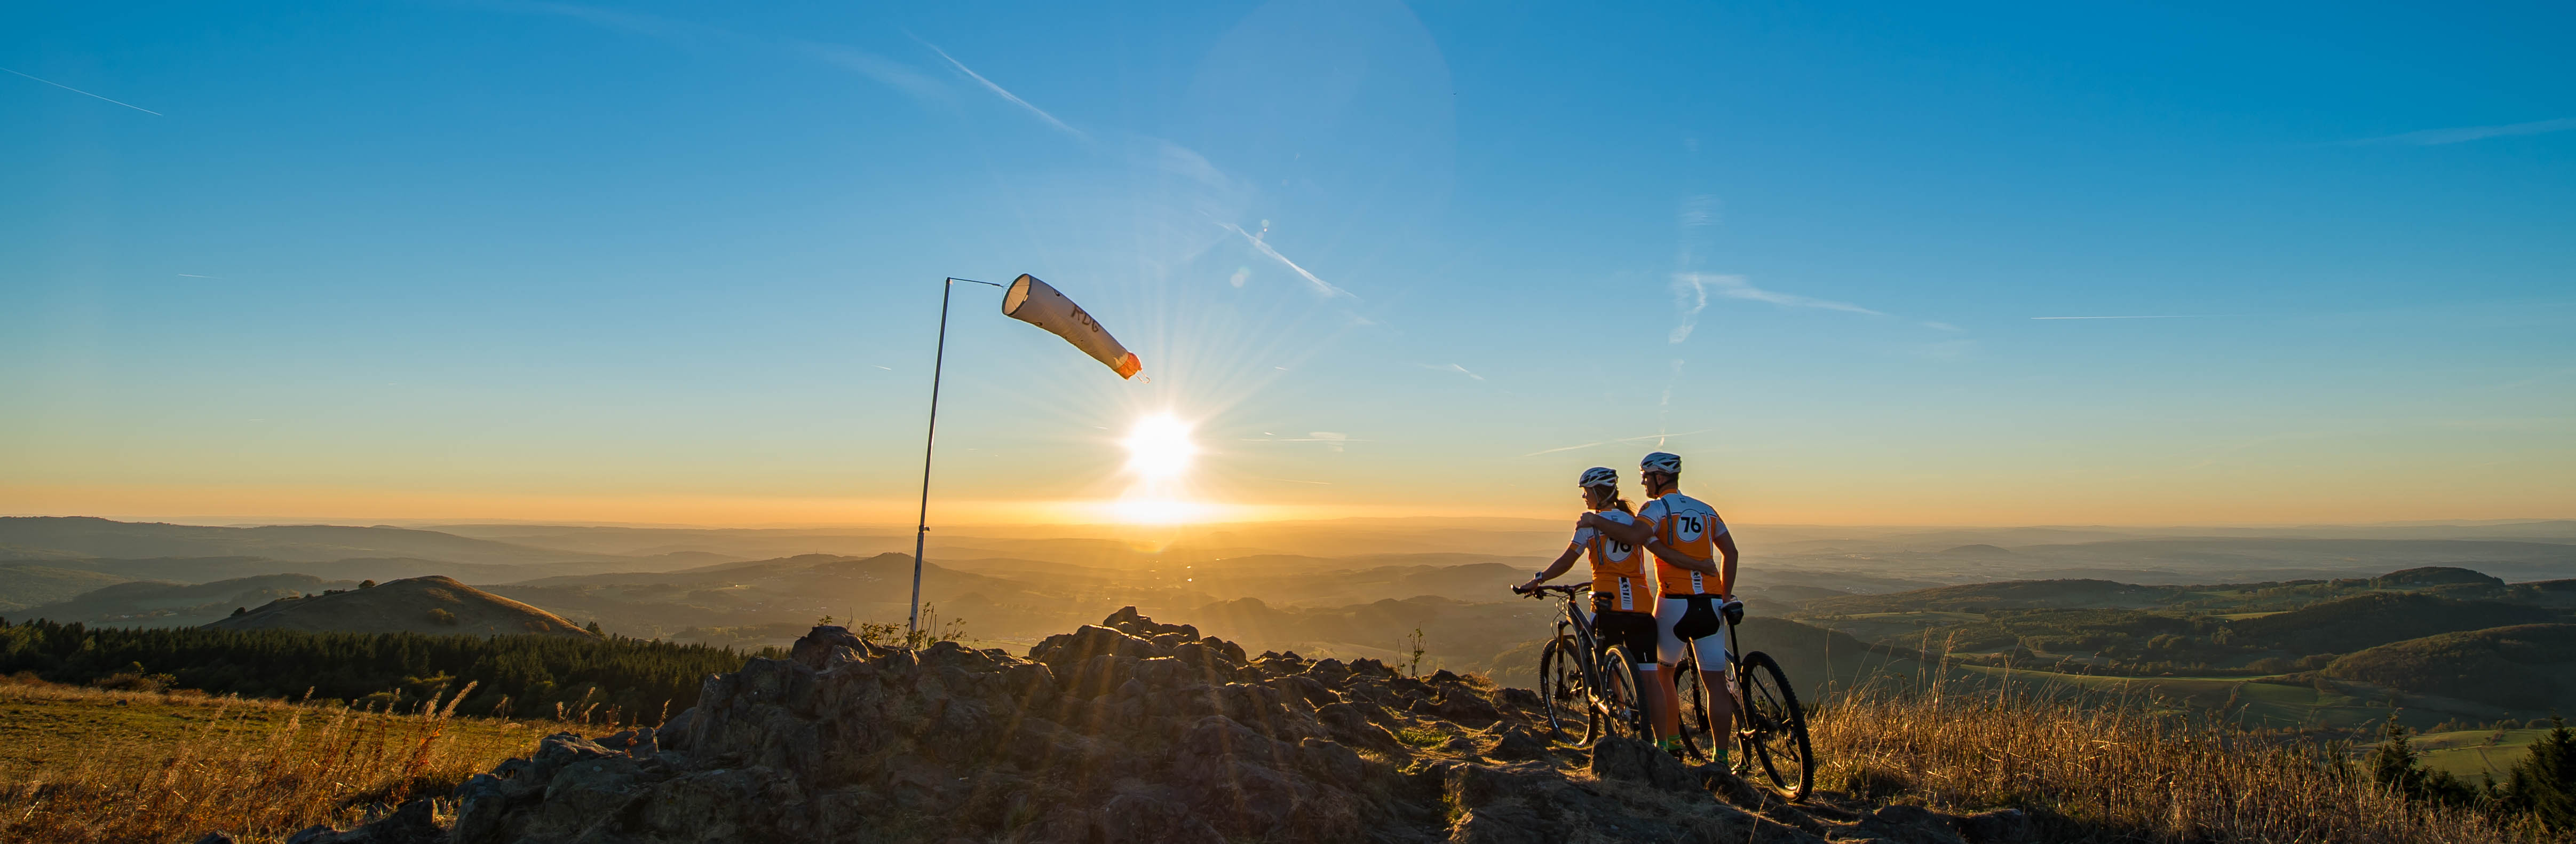 Zwei Mountainbike Fahrer stehen auf einem Gipfel mit den Fahrrädern und blicken in die Rhöner Landschaft.